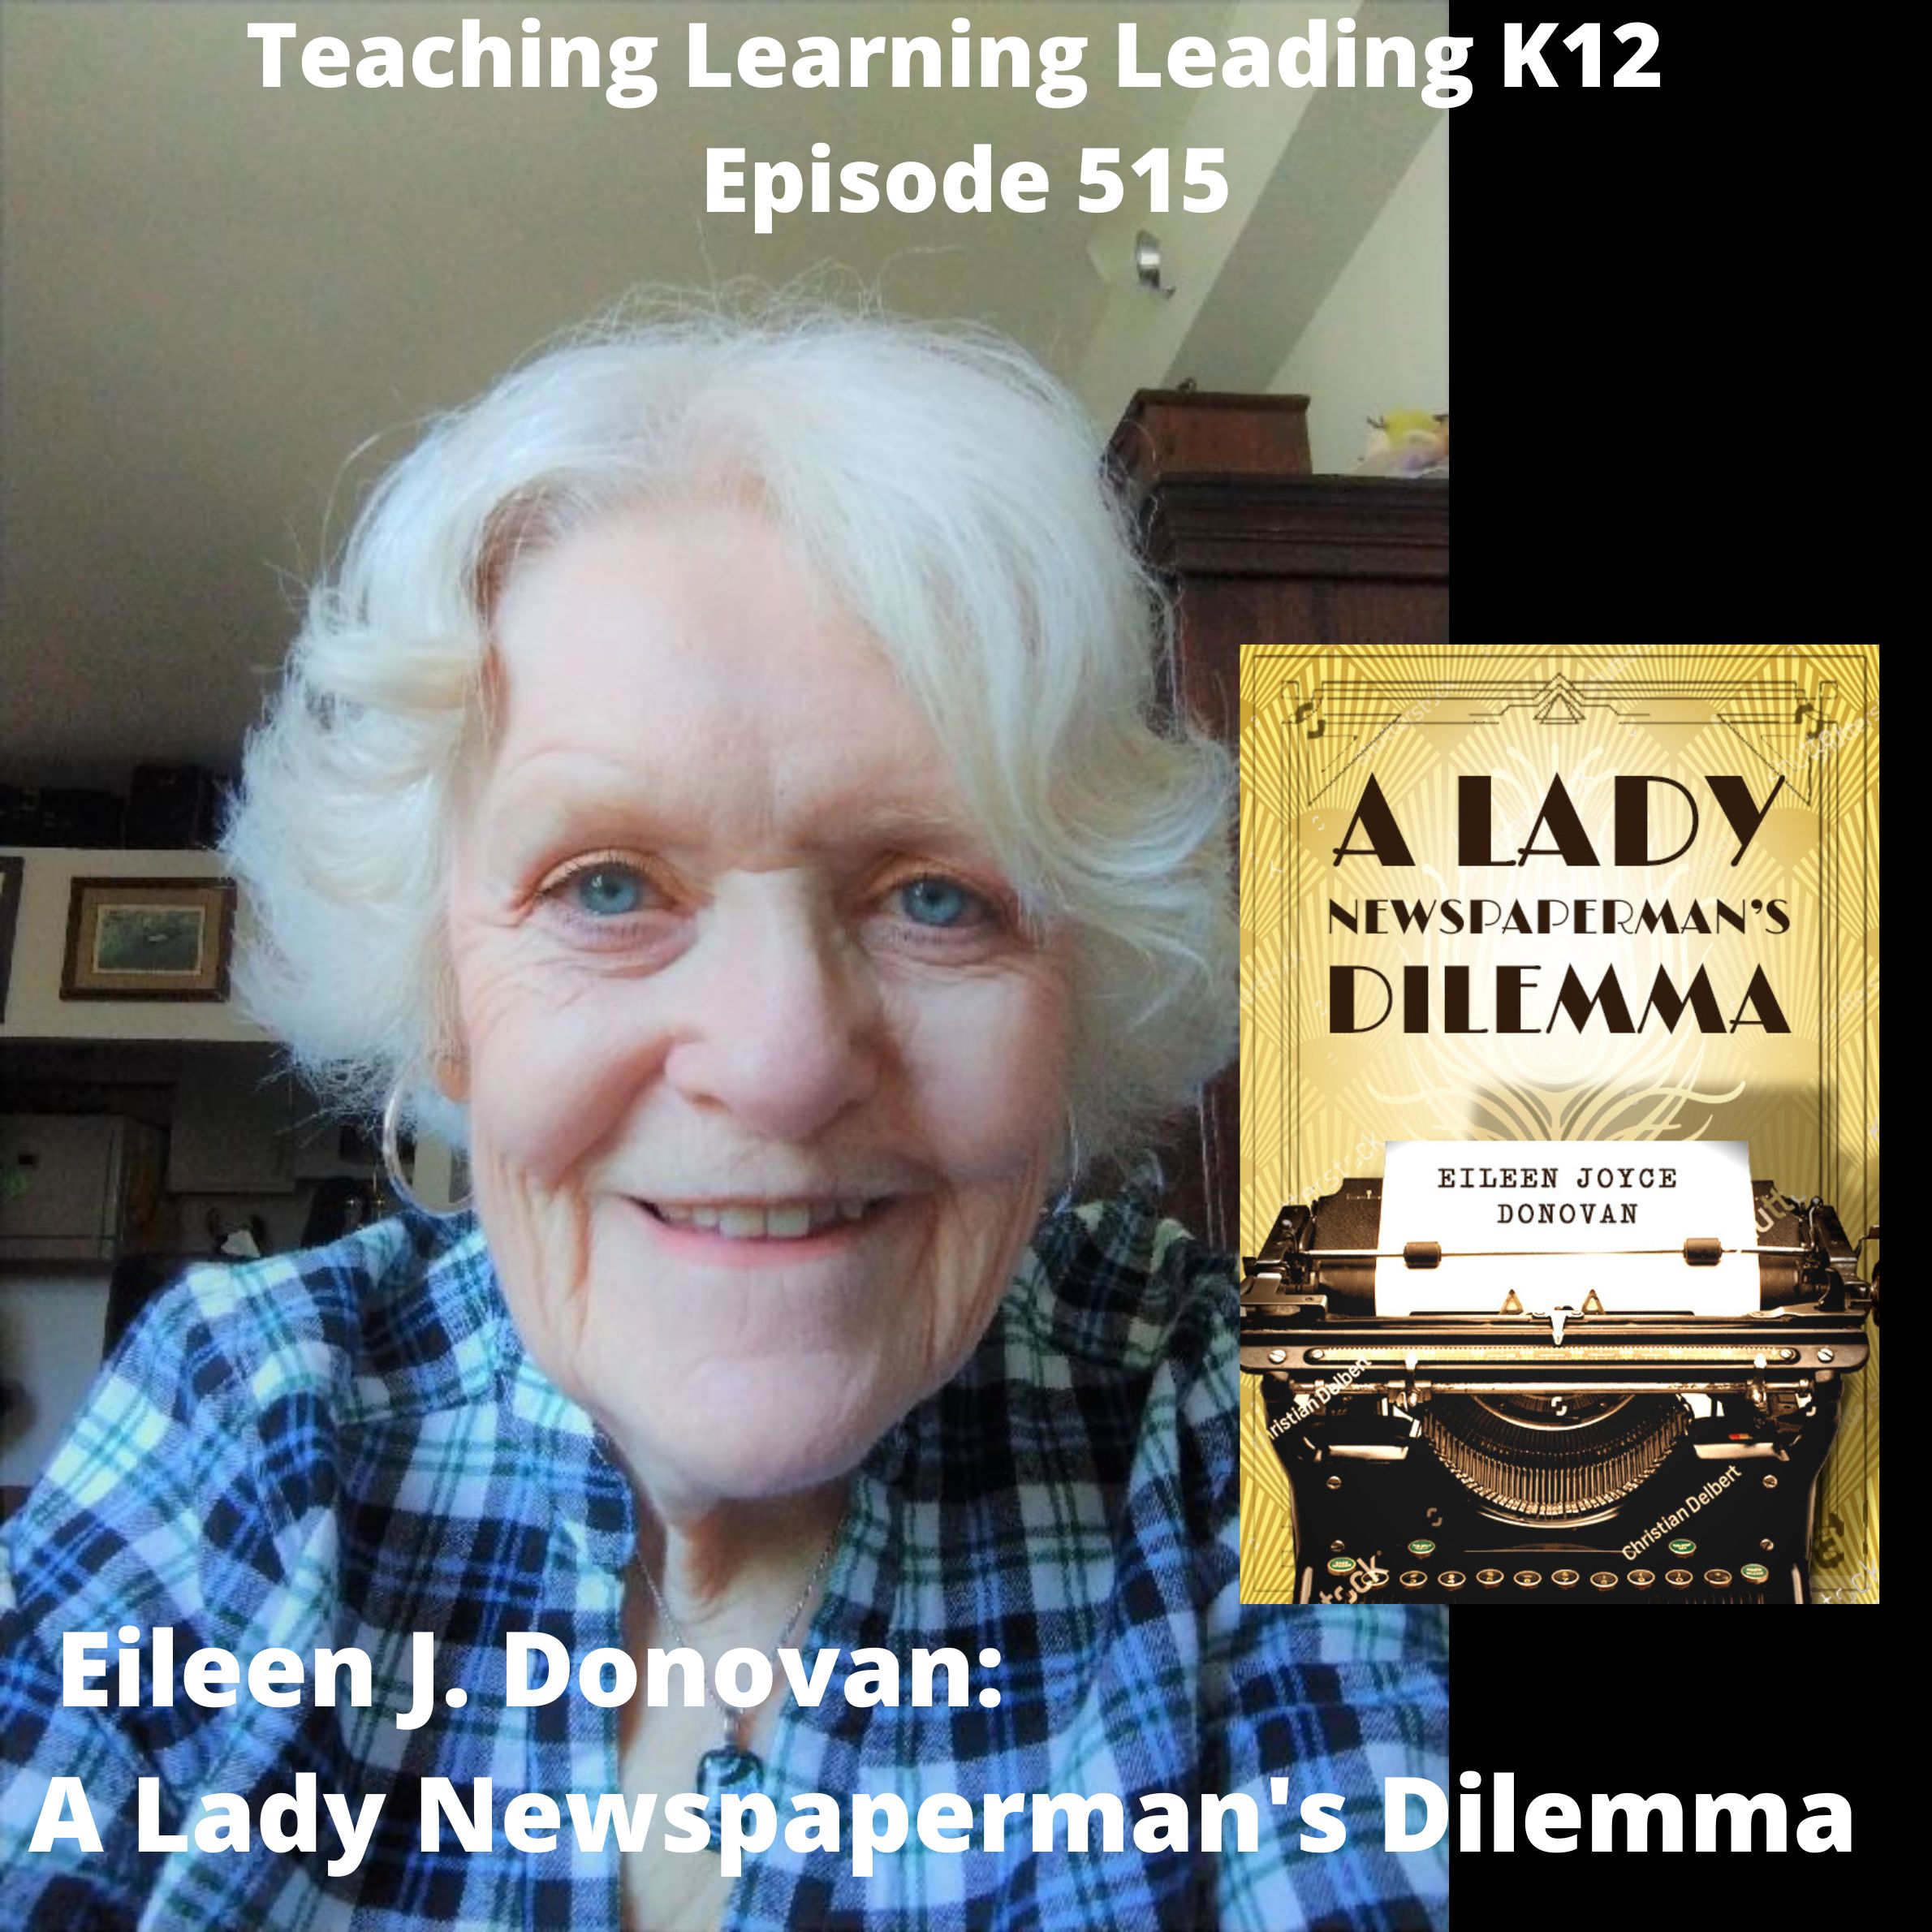 Eileen J. Donovan: A Lady Newspaperman’s Dilemma - 515